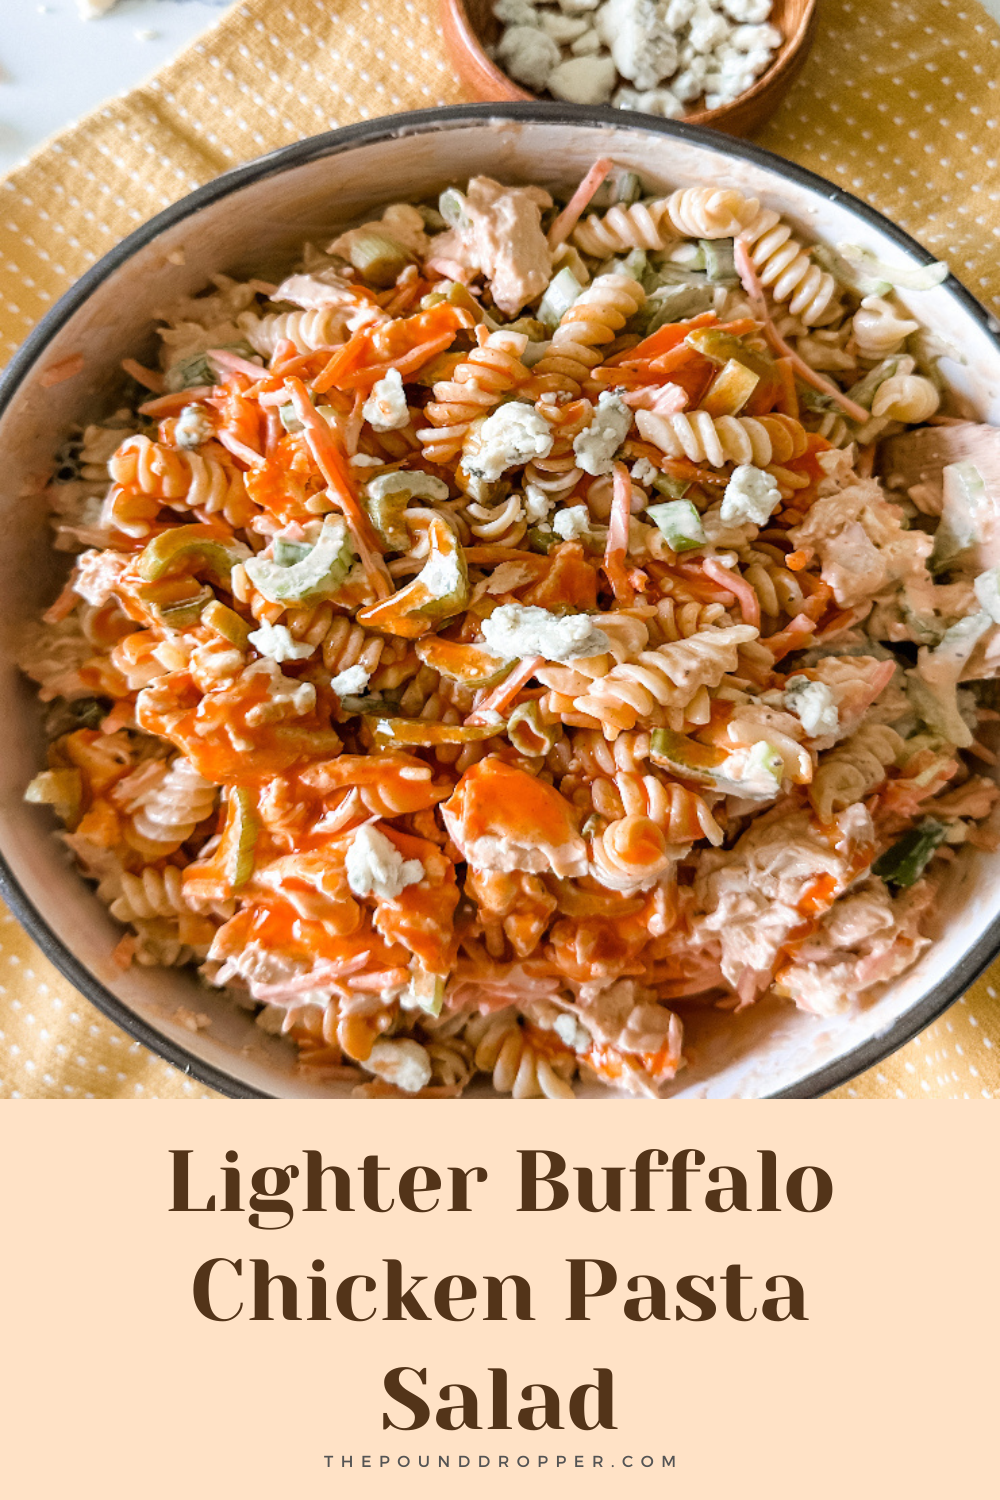 Lighter Buffalo Chicken Pasta Salad via @pounddropper